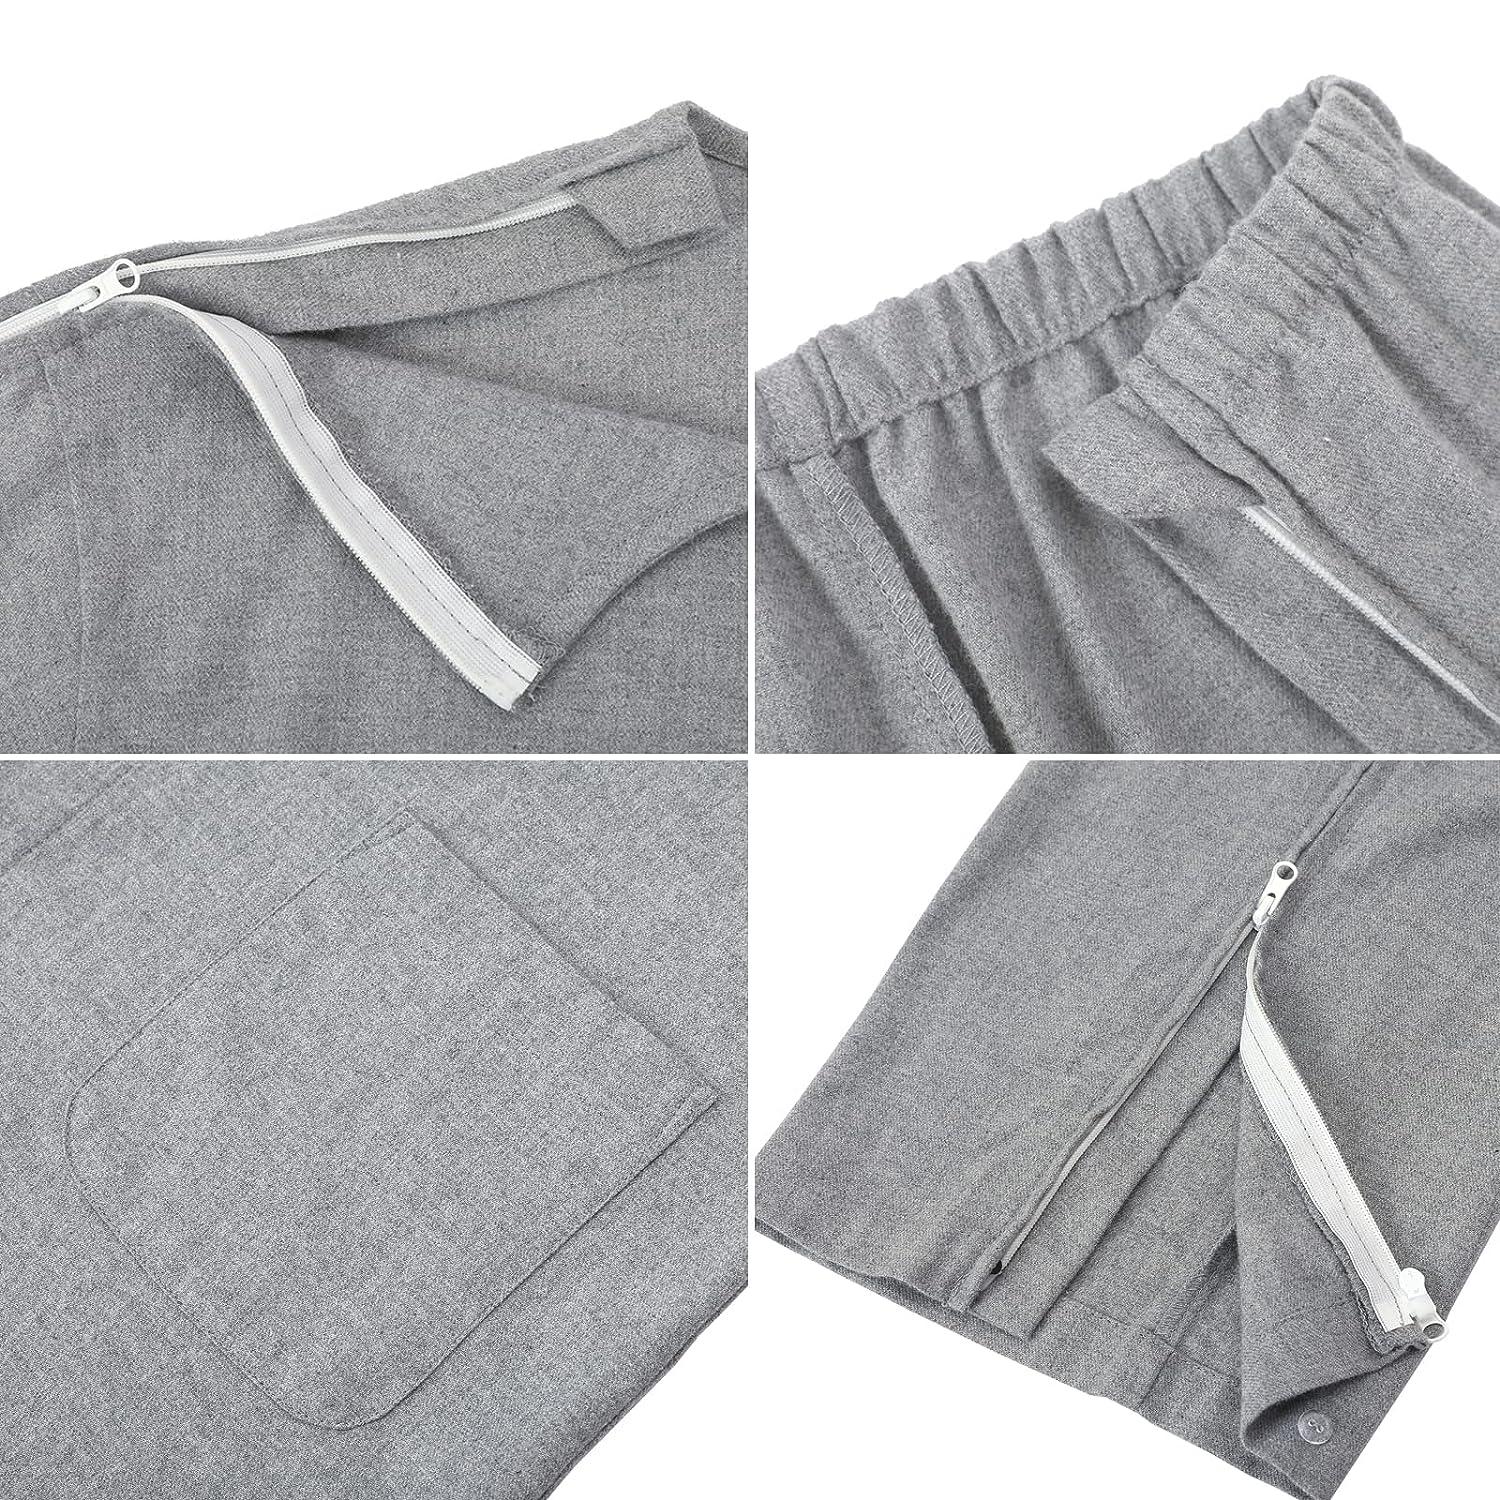 YOSINISO Bedridden Patient Clothing, Double-Opening Zipper Tearaway ...